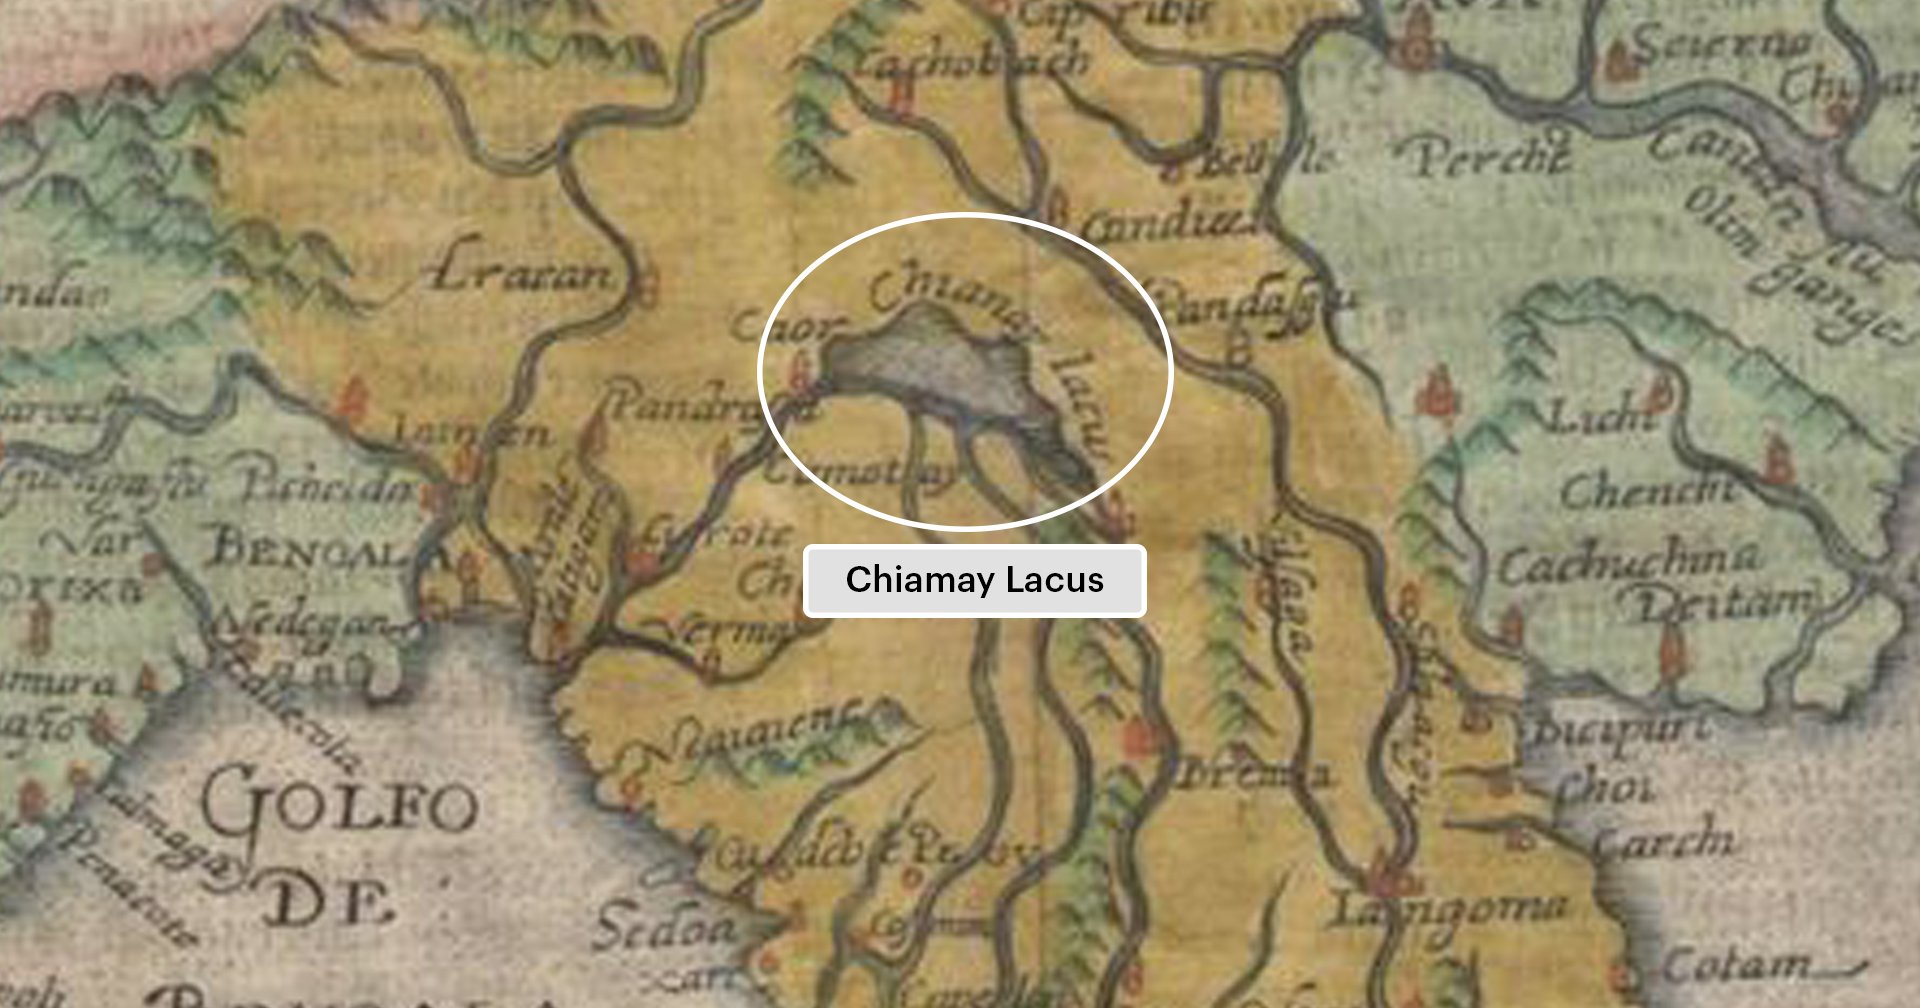 ทะเลสาบเชียงใหม่ (Chiamay Lacus) ในแผนที่เรกนัม เสียม 